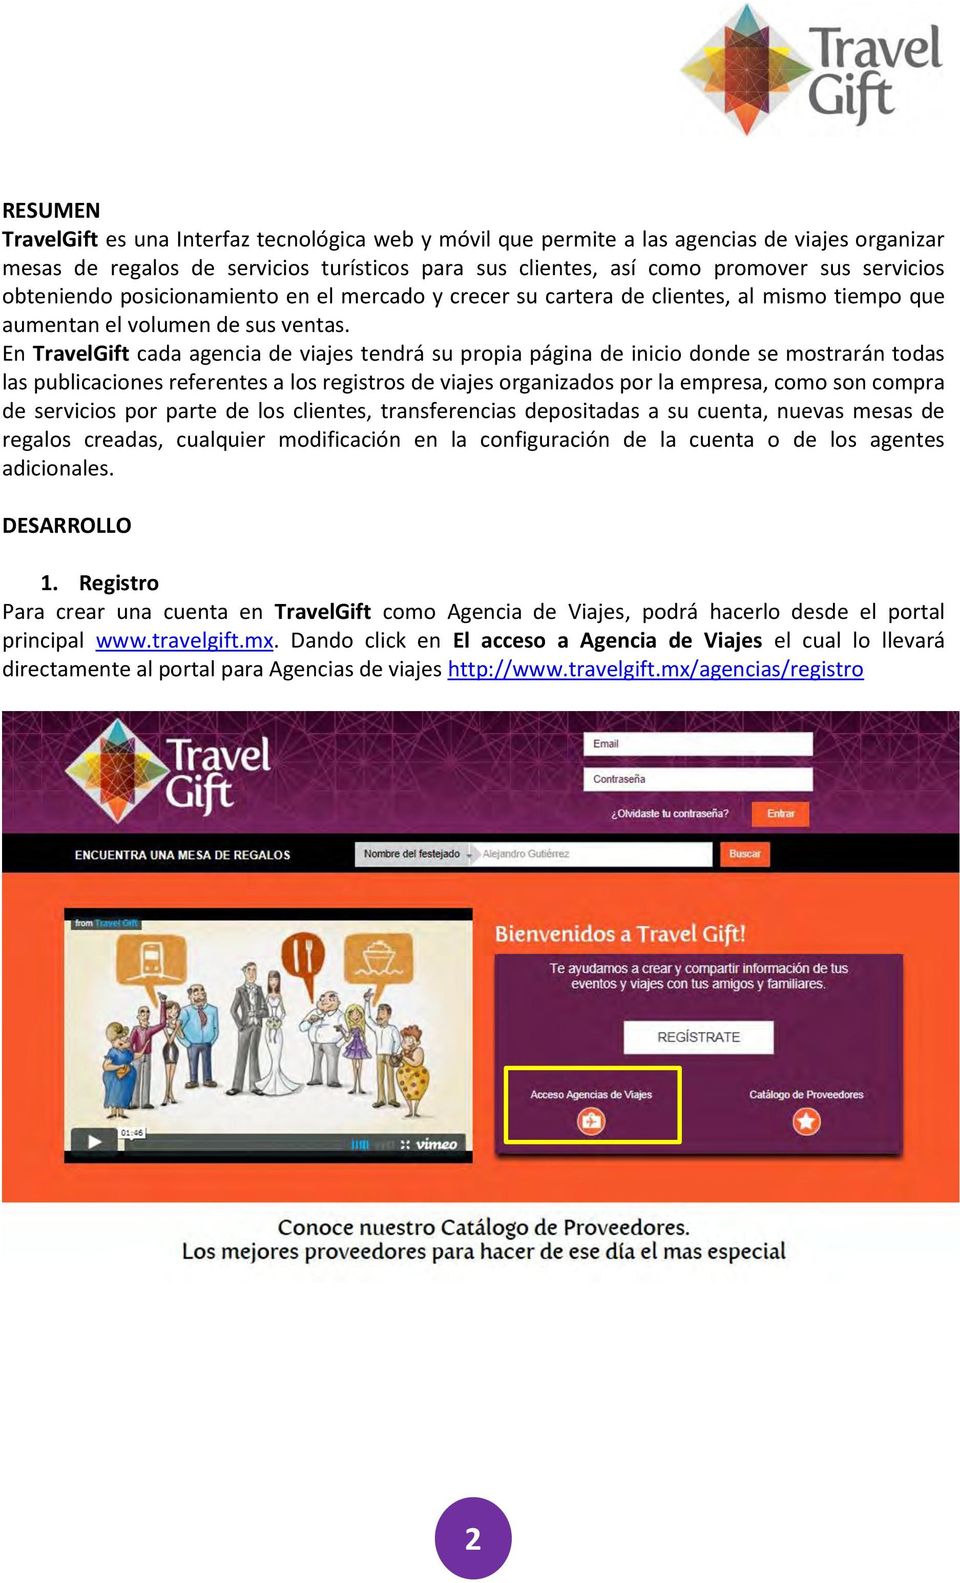 En TravelGift cada agencia de viajes tendrá su propia página de inicio donde se mostrarán todas las publicaciones referentes a los registros de viajes organizados por la empresa, como son compra de